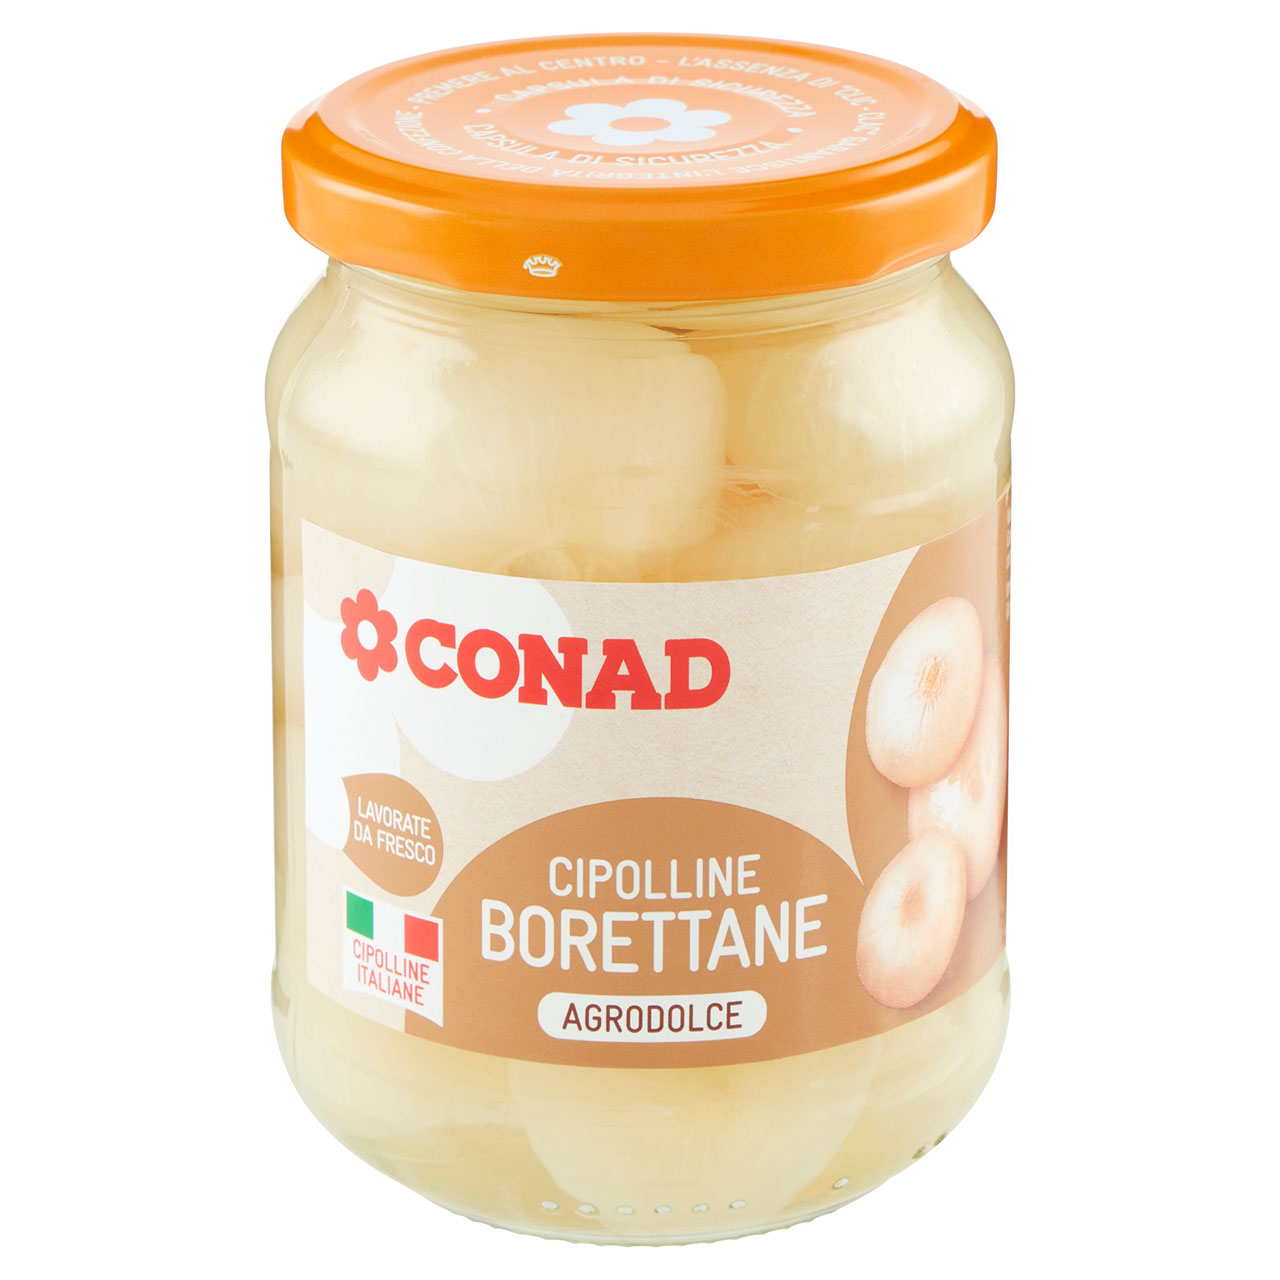 Cipolline Borettane Agrodolce 290 g Conad